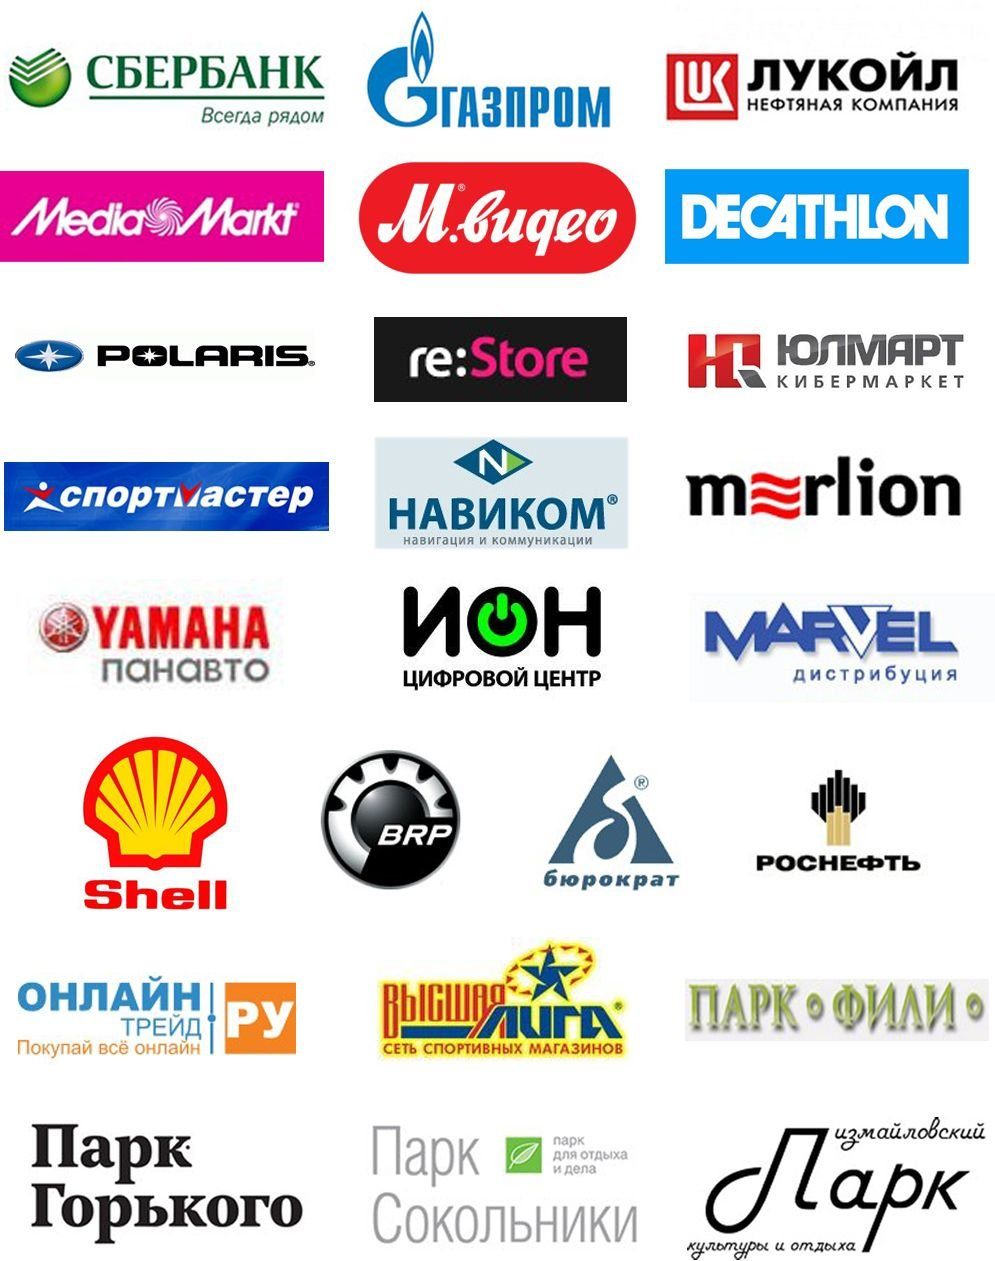 Логотип компании фото. Логотипы российских компаний. Известные торговые марки. Логотипы крупных компаний. Названия известных фирм.